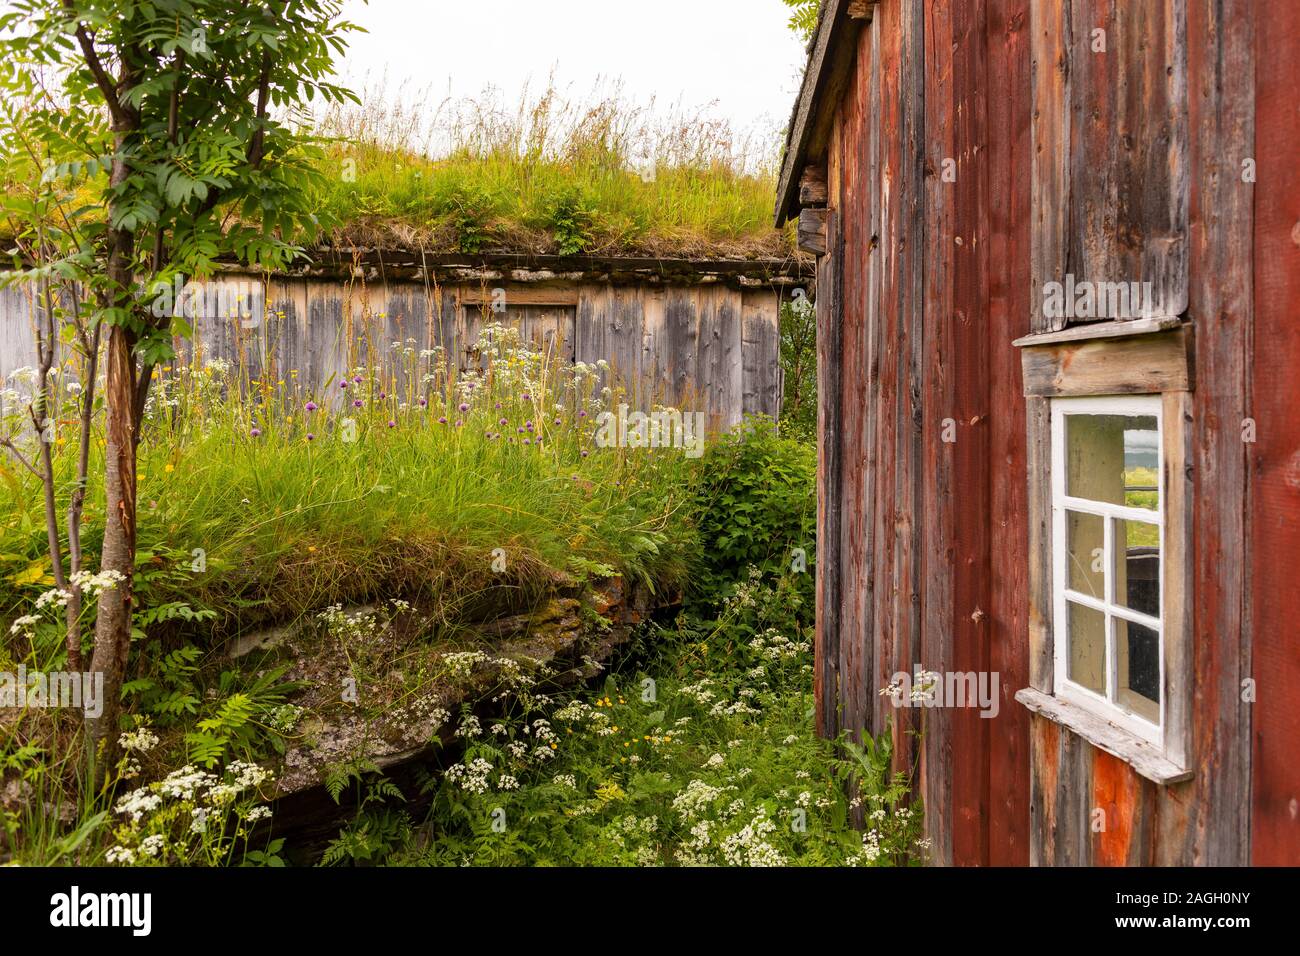 L'ÎLE DE KVALØYA, STRAUMSBUKTA, comté de Troms, NORVÈGE - musée historique village de Straumen Gård avec toit gazon bâtiments. Toit de chaume est traditionnel. Banque D'Images